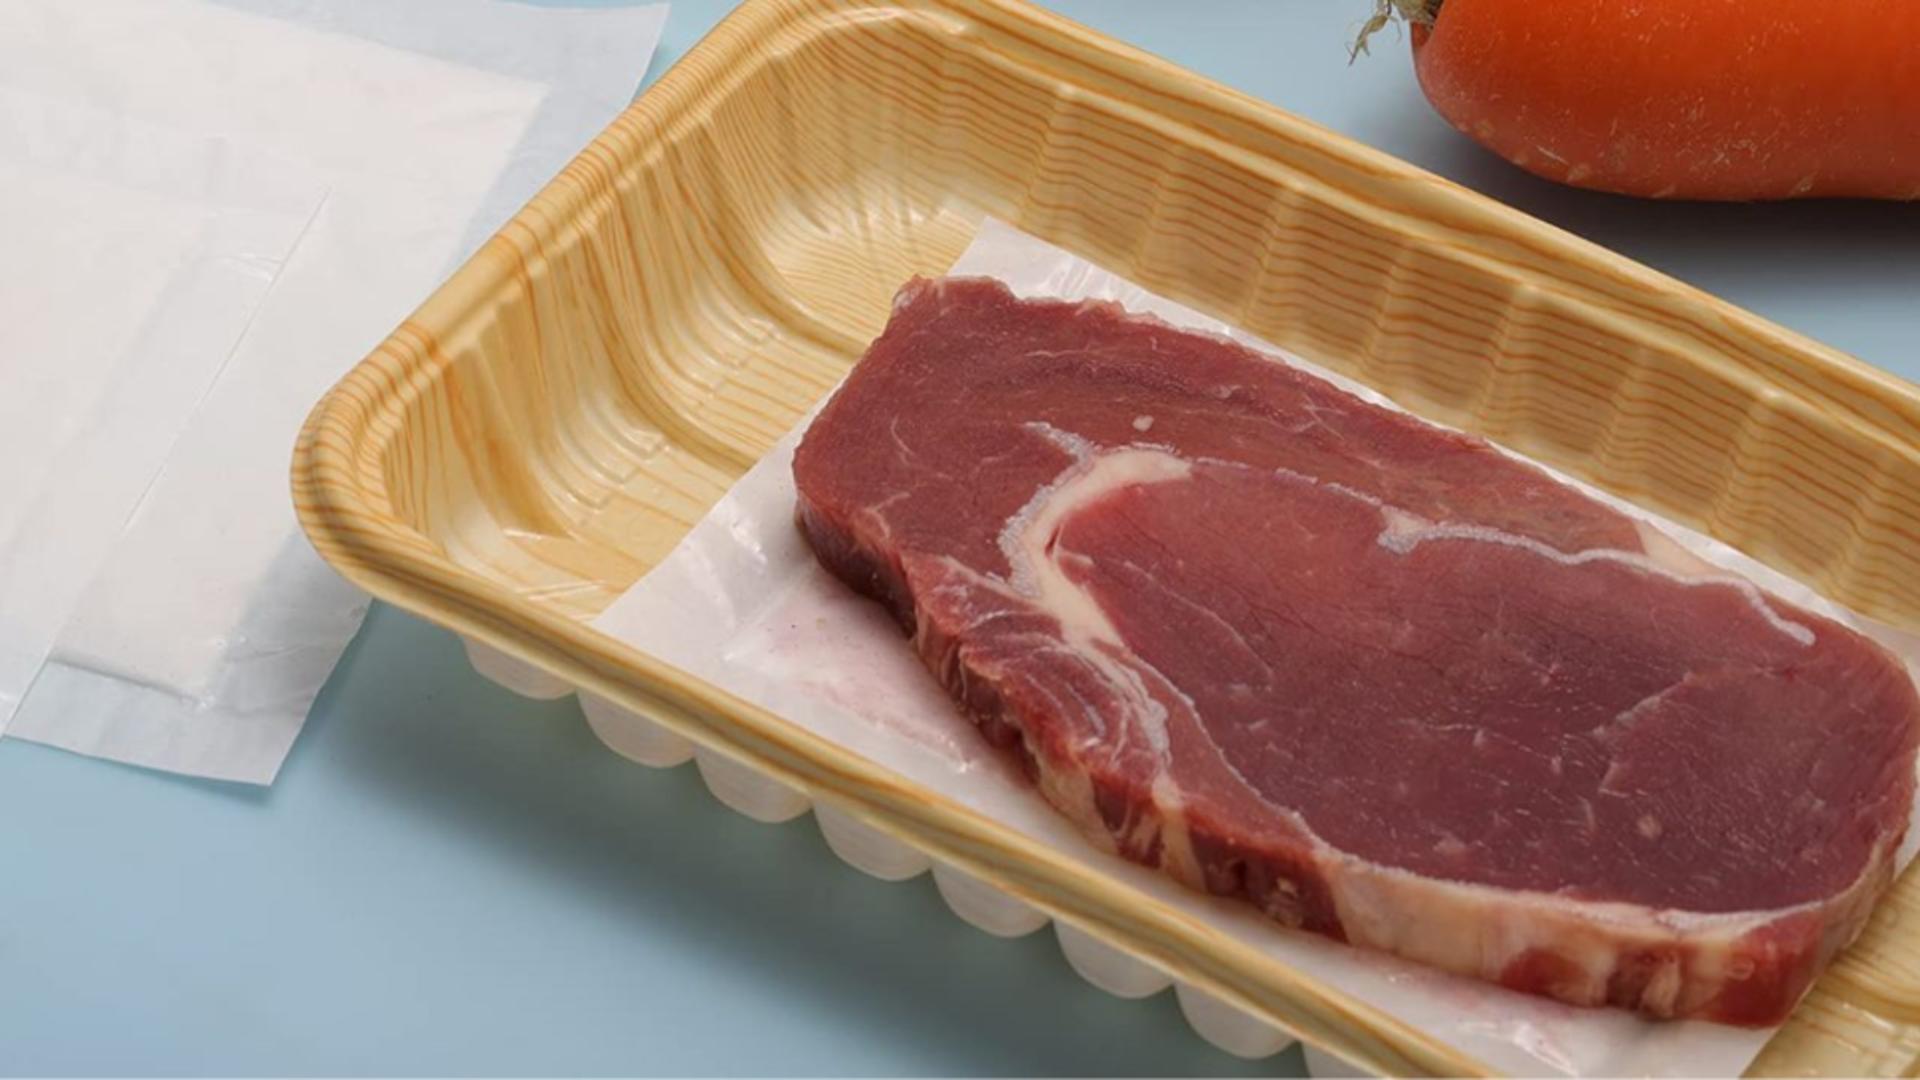 Carnea ar putea avea etichetă de avertizare precum țigările – Demență alimentară – Ultima nebunie la care visează aleșii